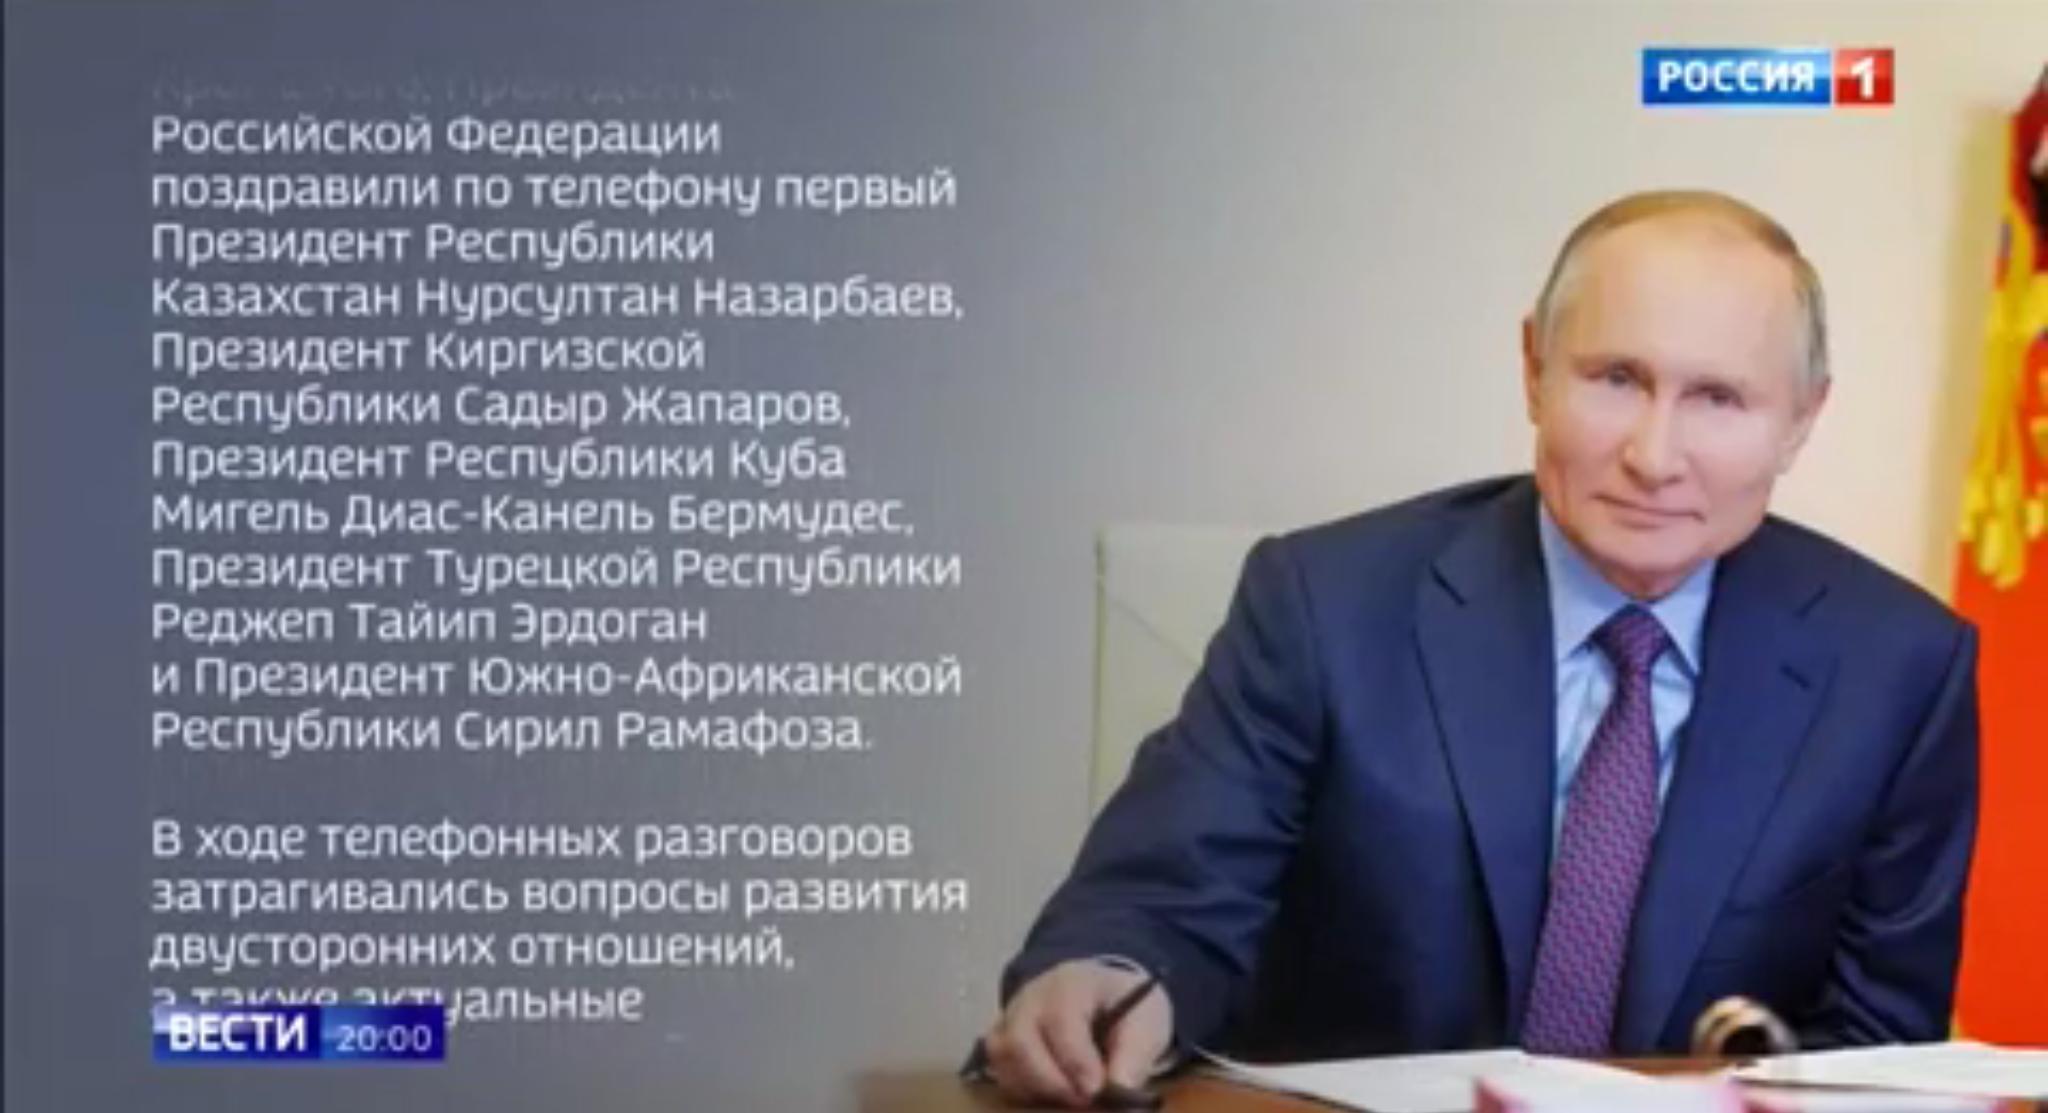 Zdjęcie Putina i lista życzeń (po rosyjsku)